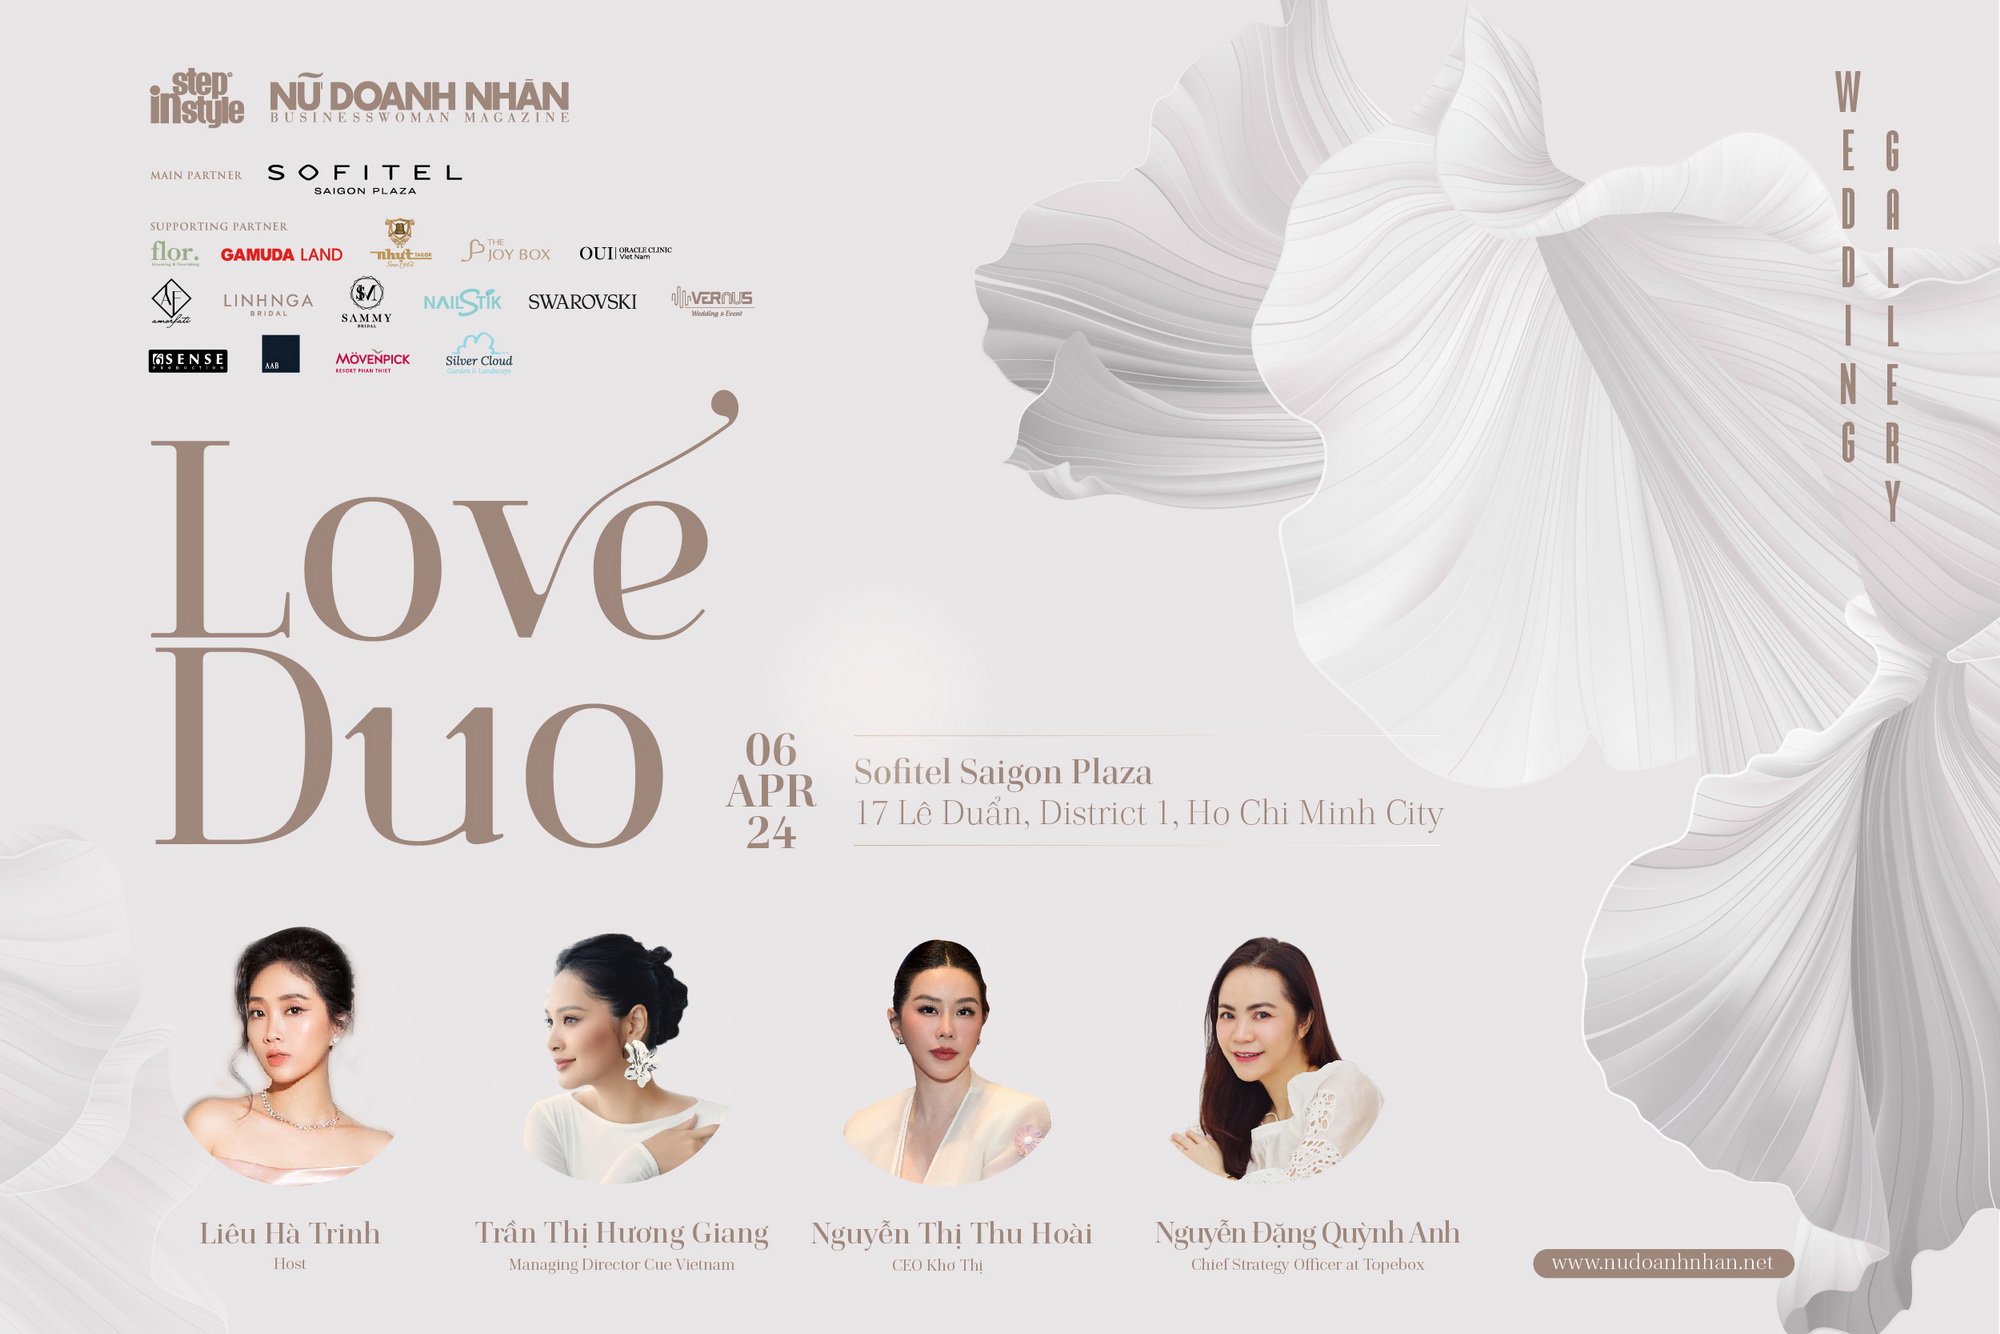 Host Liêu Hà Trinh cùng các khách mời đặc biệt sẽ mang đến nhiều câu chuyện thú vị về ngày cưới tại talkshow Love Duo